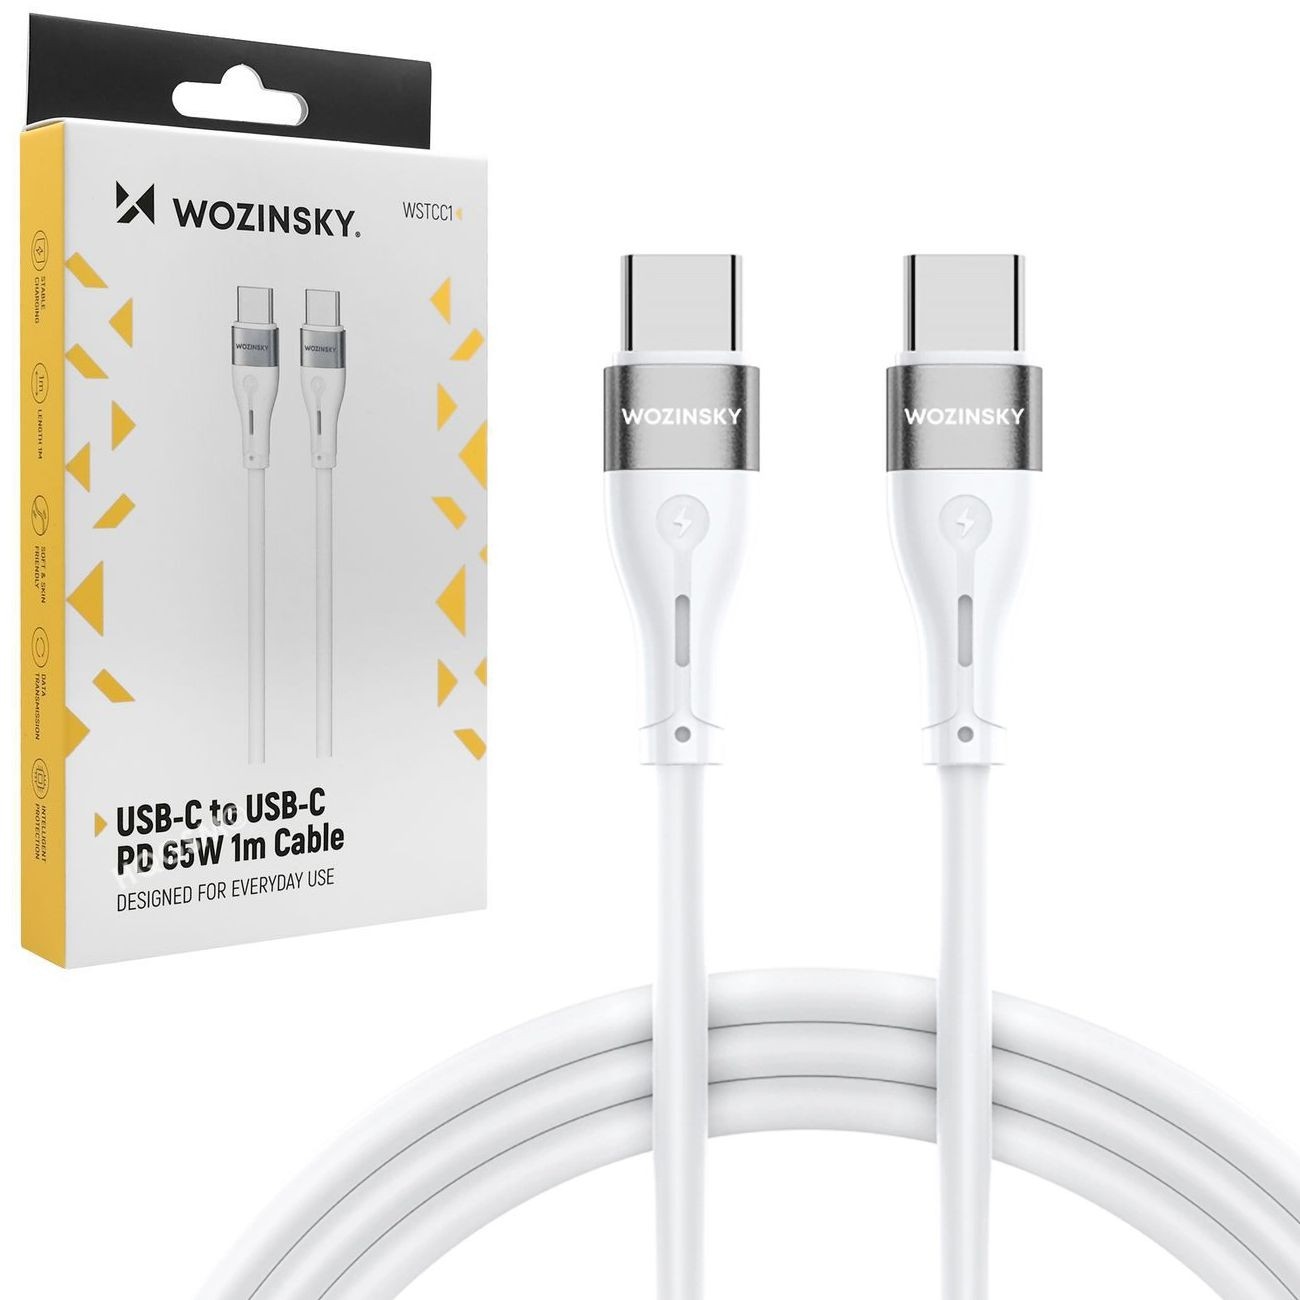 Wzmocniony Kabel USB-C Power Delivery | 65W | Biały | 100cm